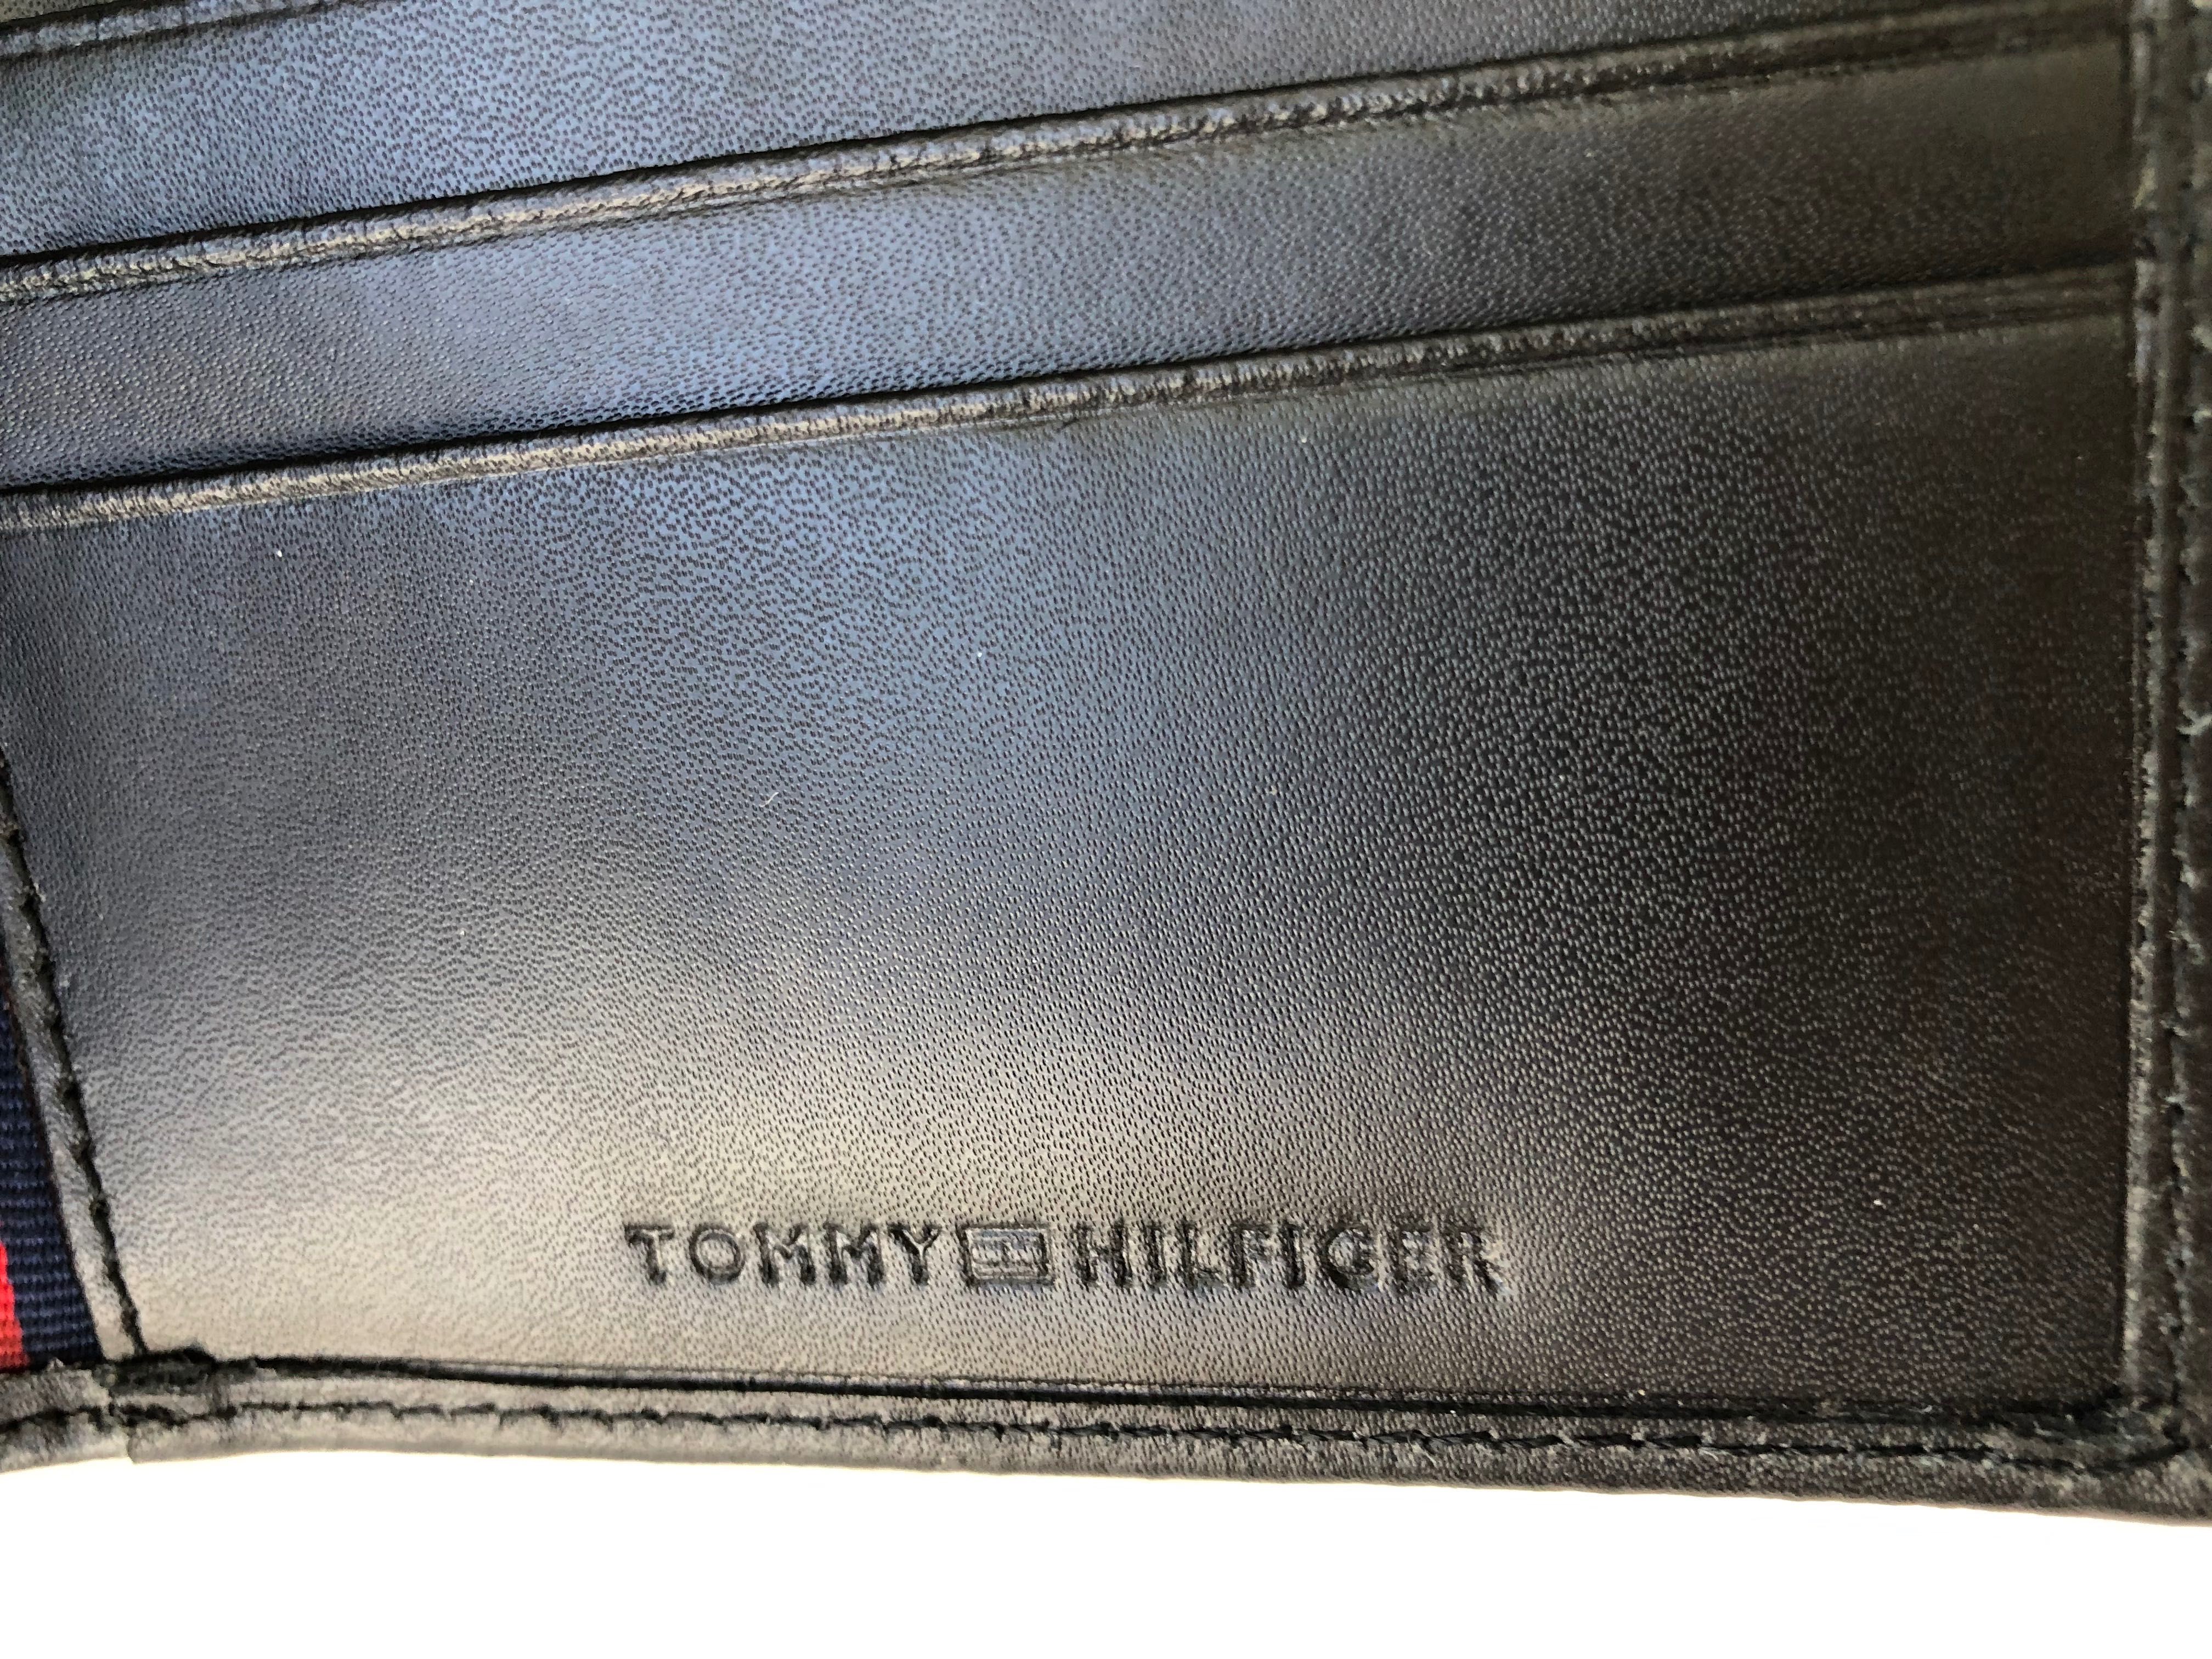 Tommy Hilfiger portfel meski skorzany